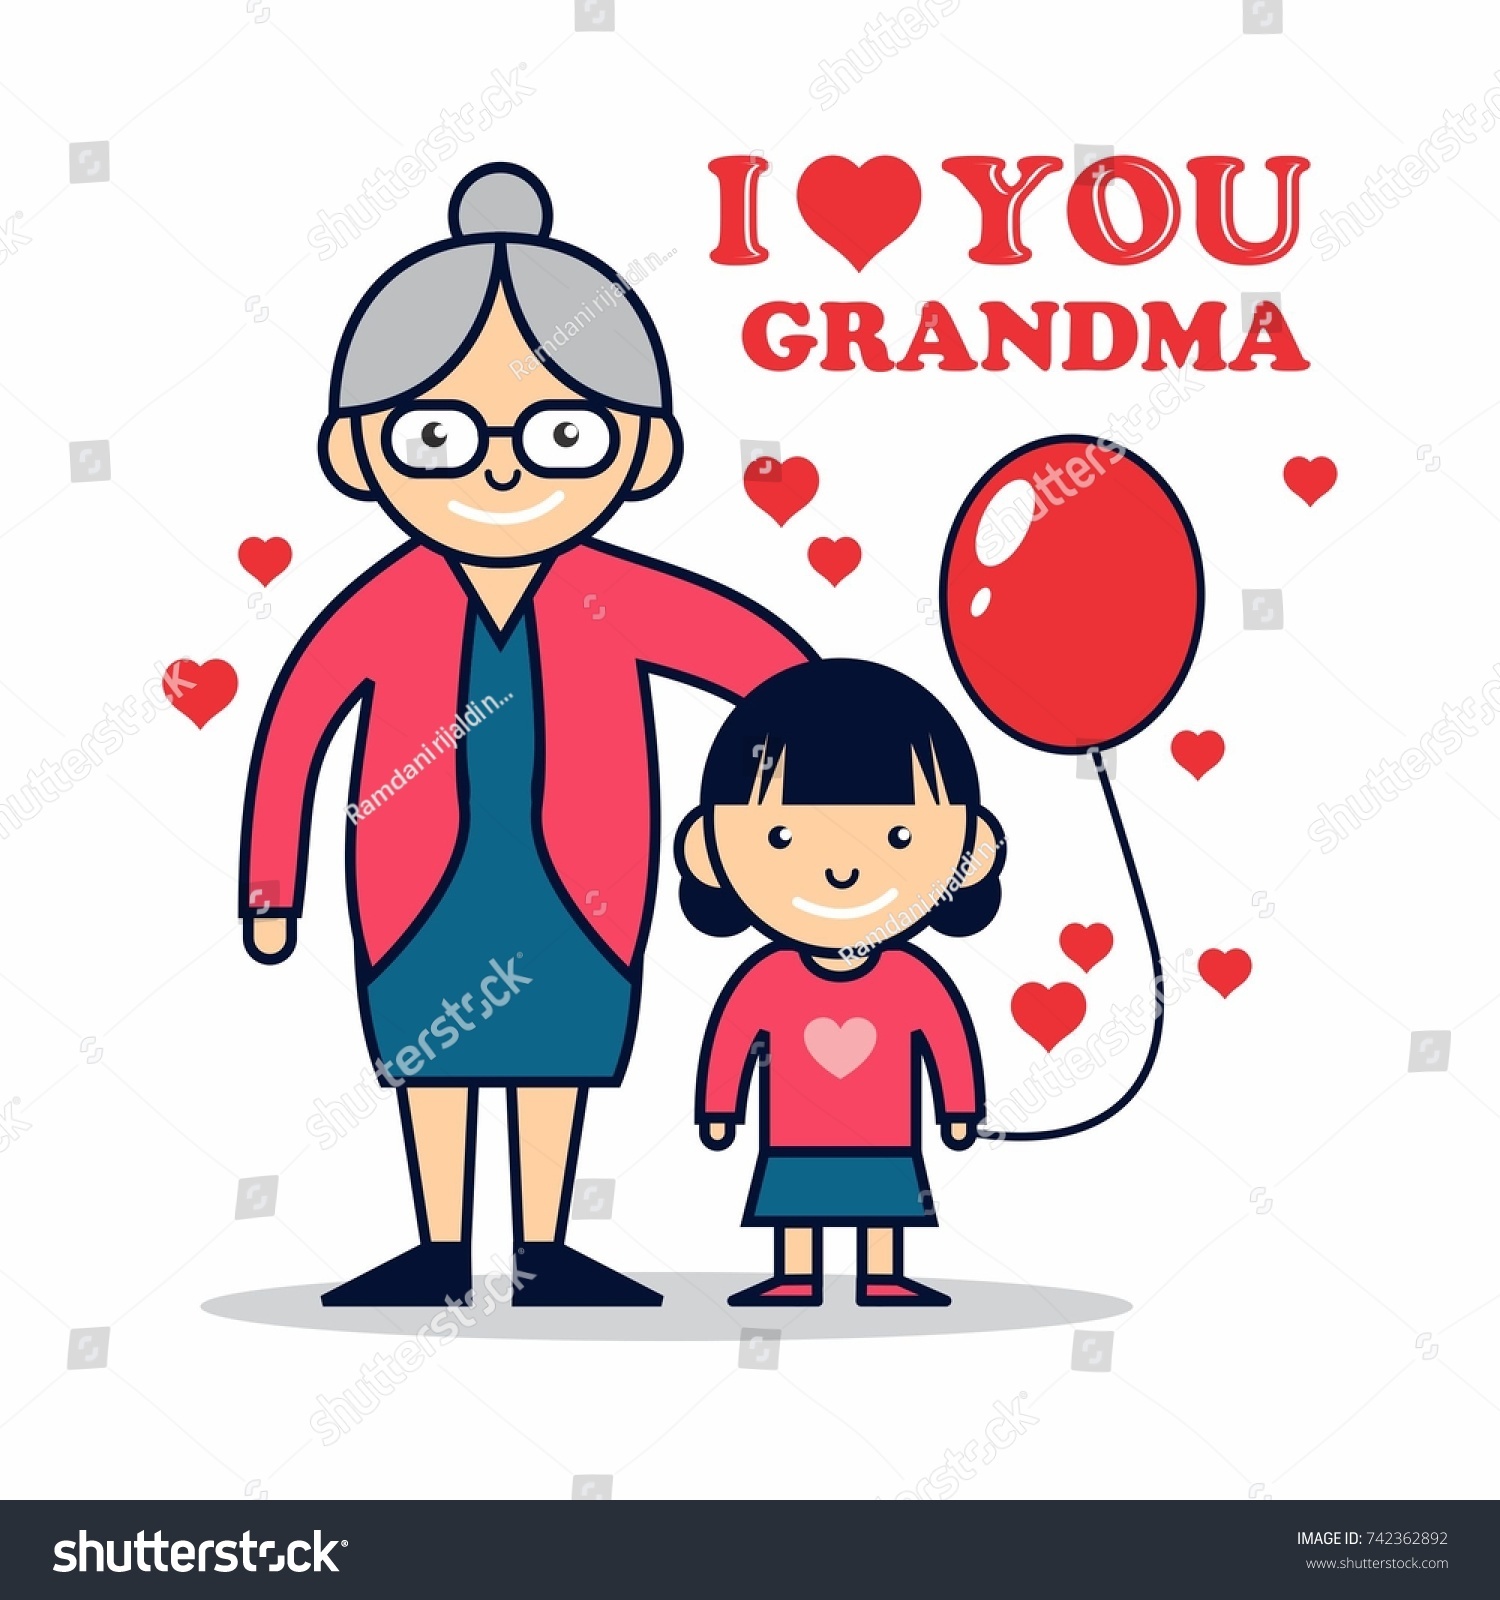 Ilove granny